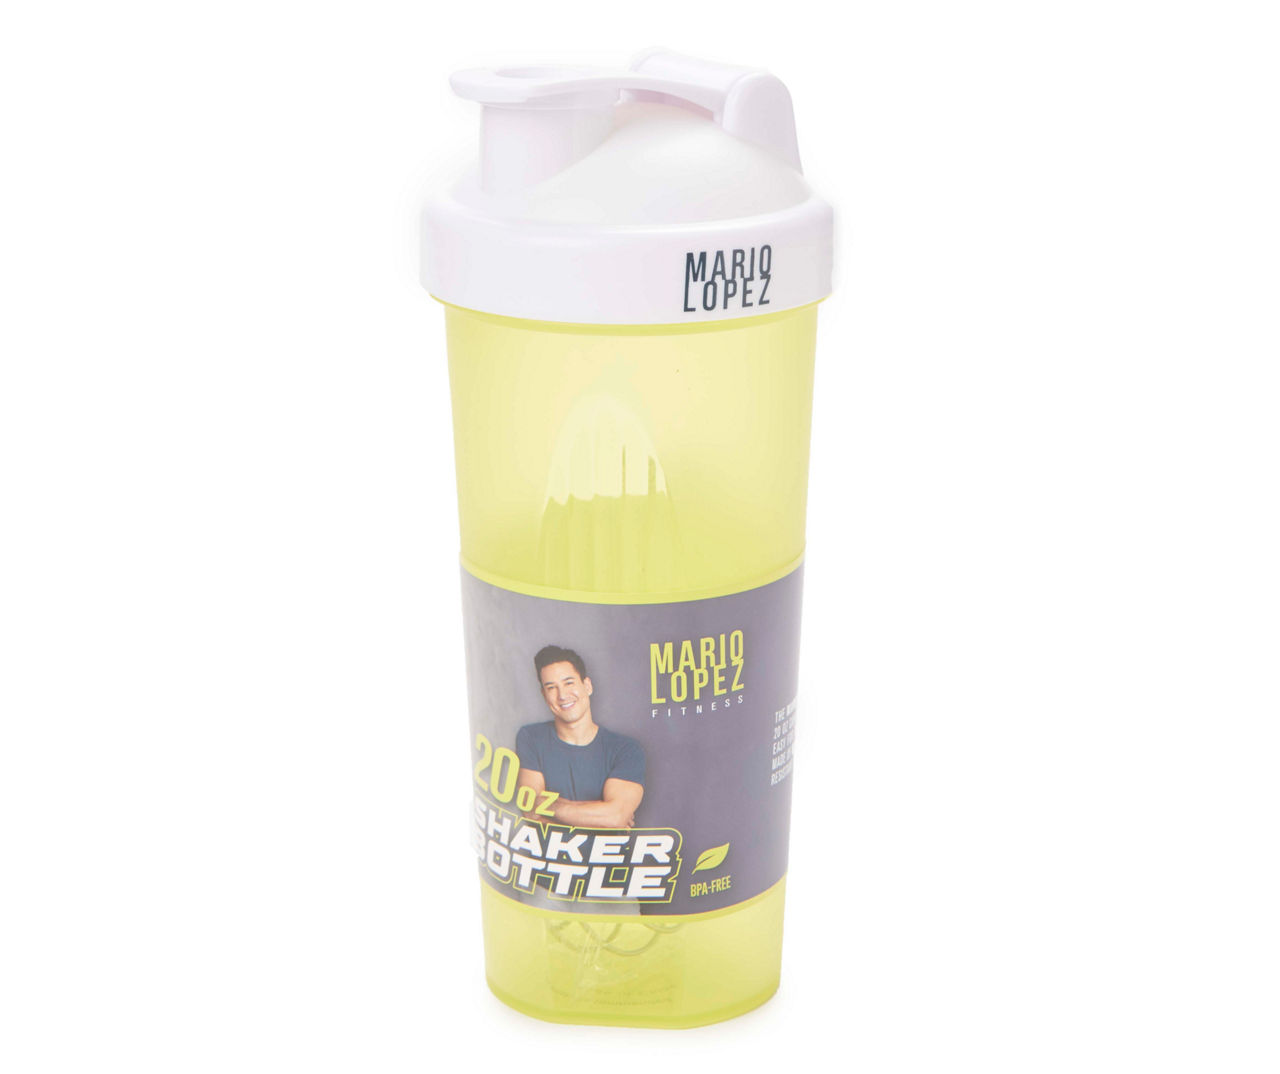 Mario Lopez Fitness Green Shaker Bottle, 20 oz.